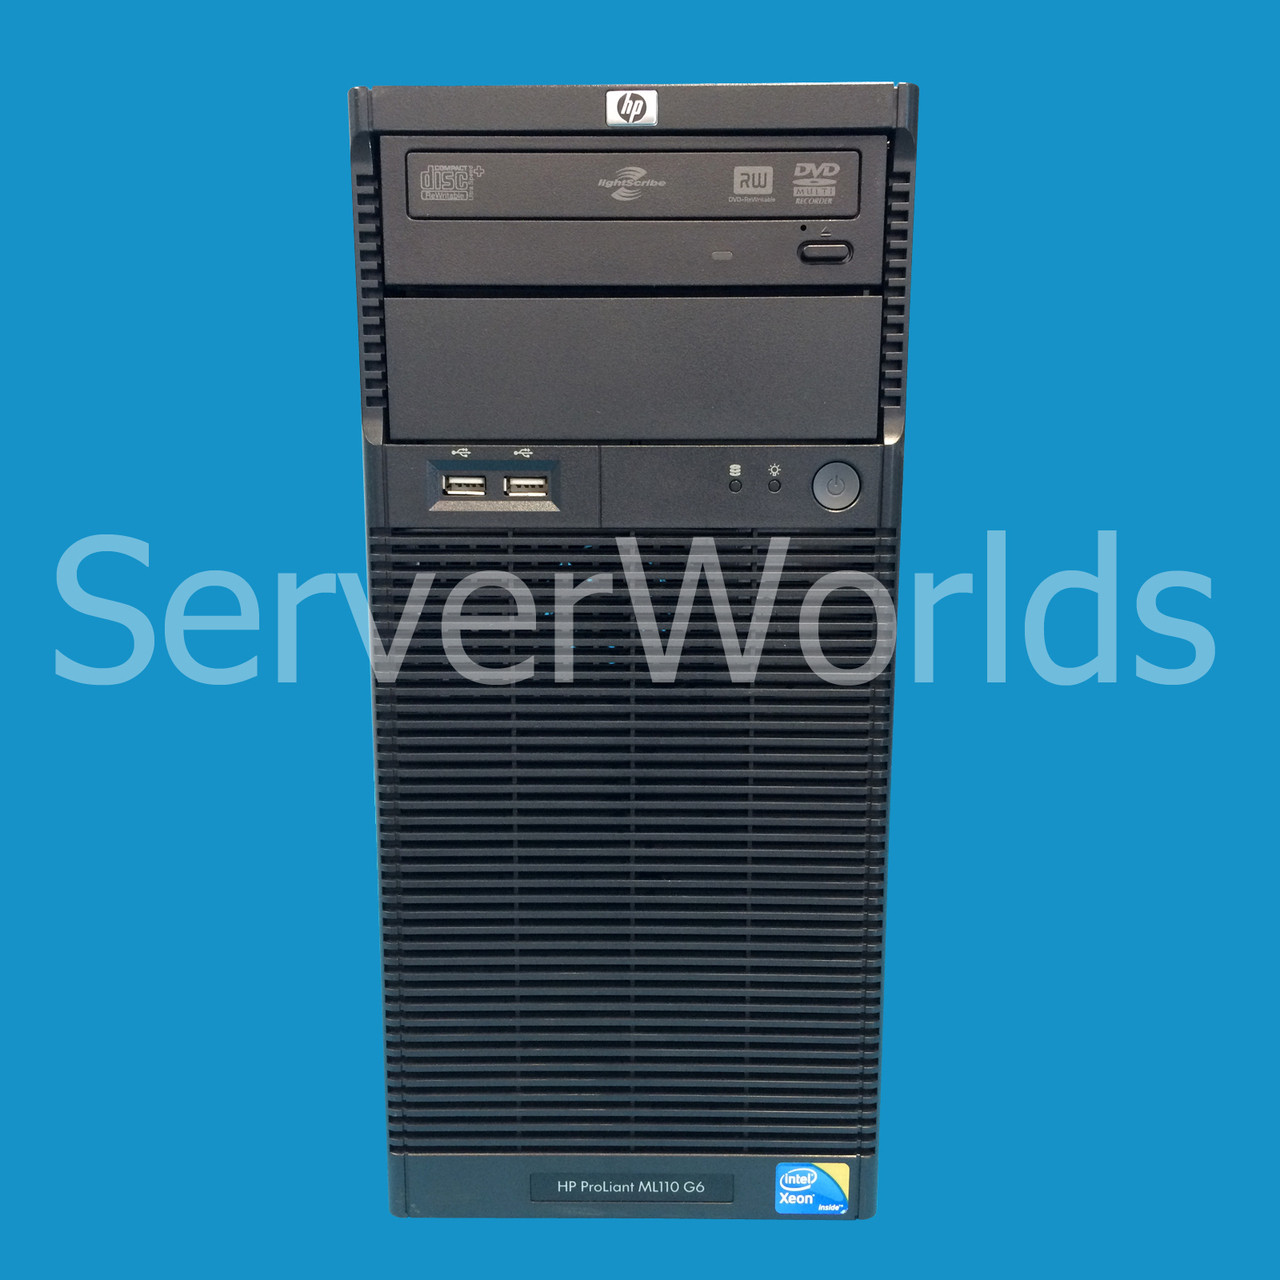 HP 510078-B21 | Refurbished ML110 G6 Server | Used HP ML110 G6